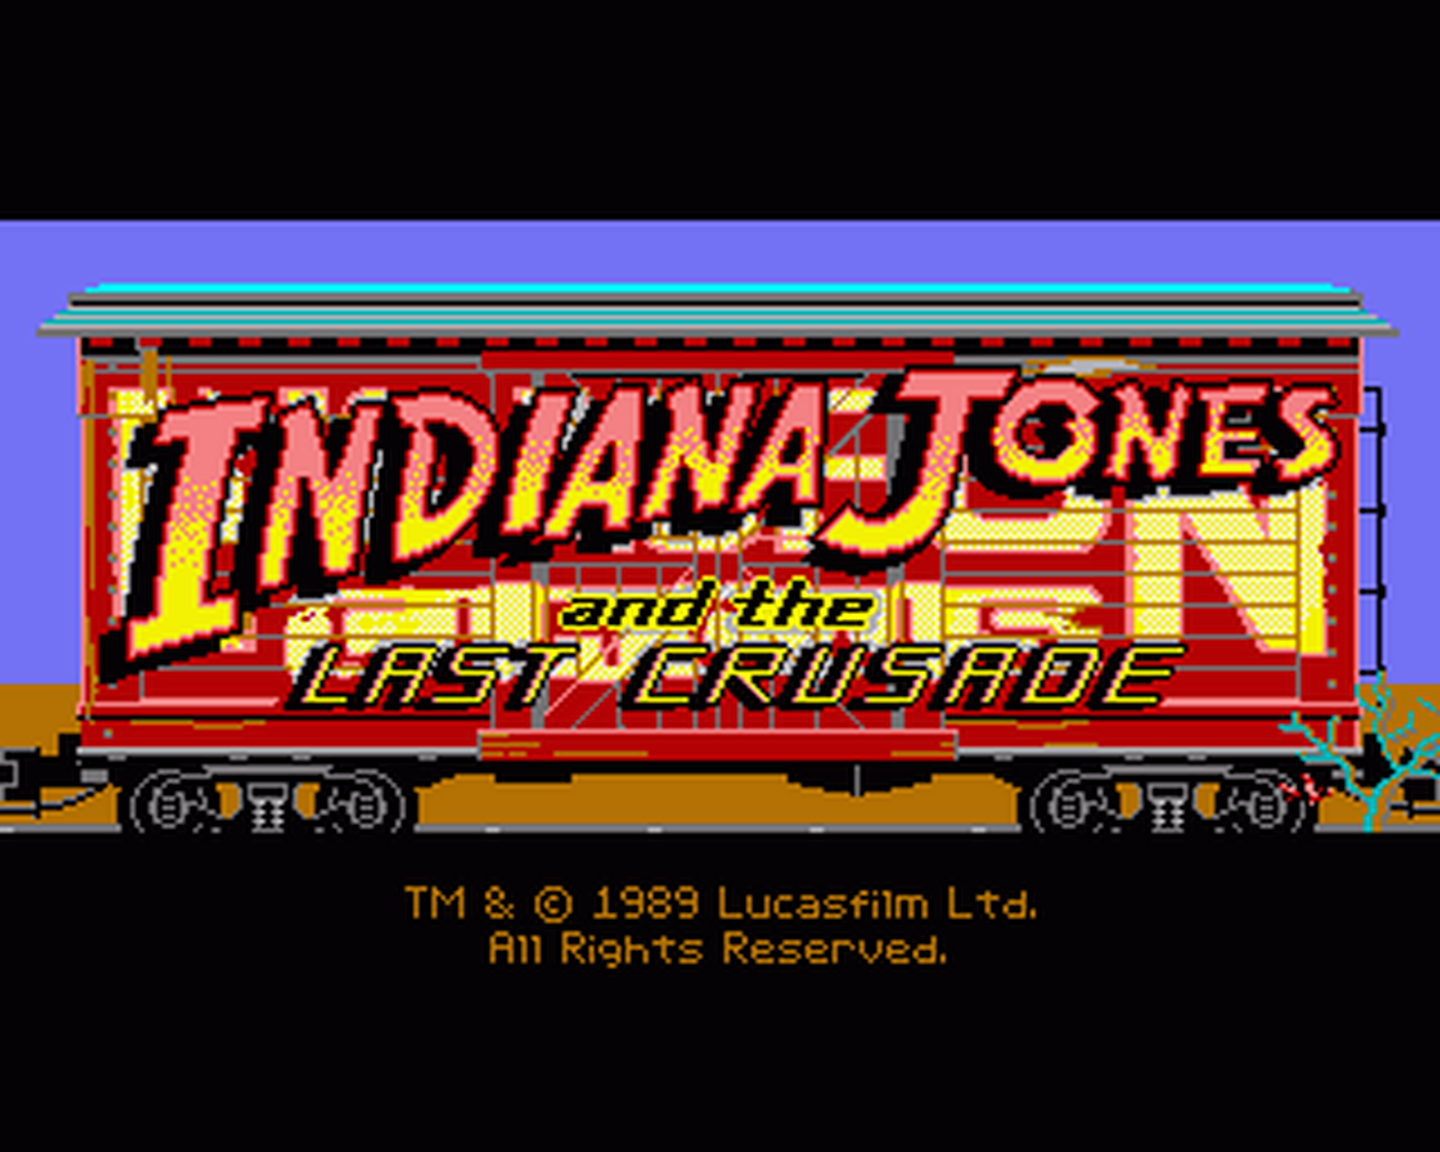 Amiga GameBase Indiana_Jones_and_the_Last_Crusade_-_The_Graphic_Adventure Lucasfilm 1989